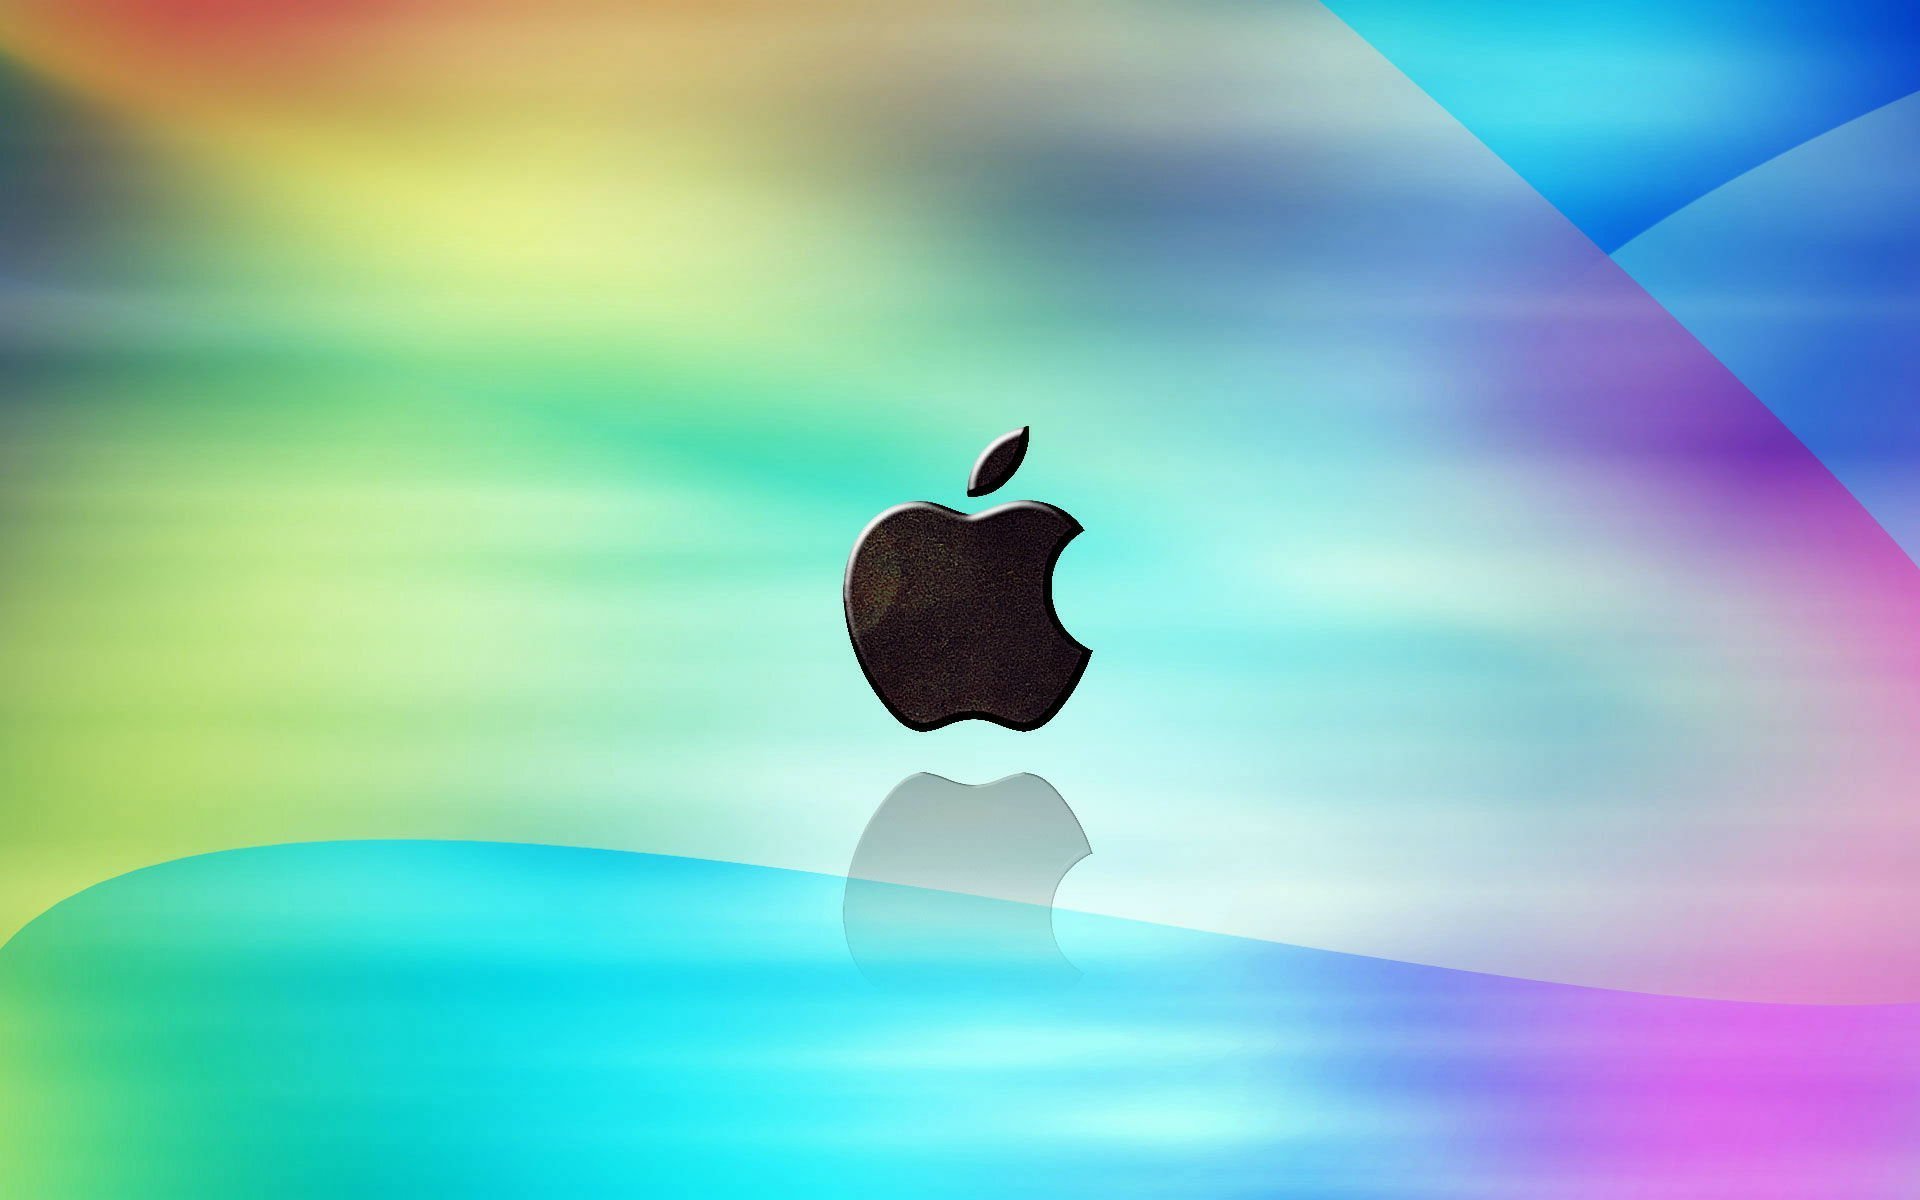 Обои на айфон яблоко. Логотип Apple. Яблоко айфон. Обои Apple. Яблочко айфона.